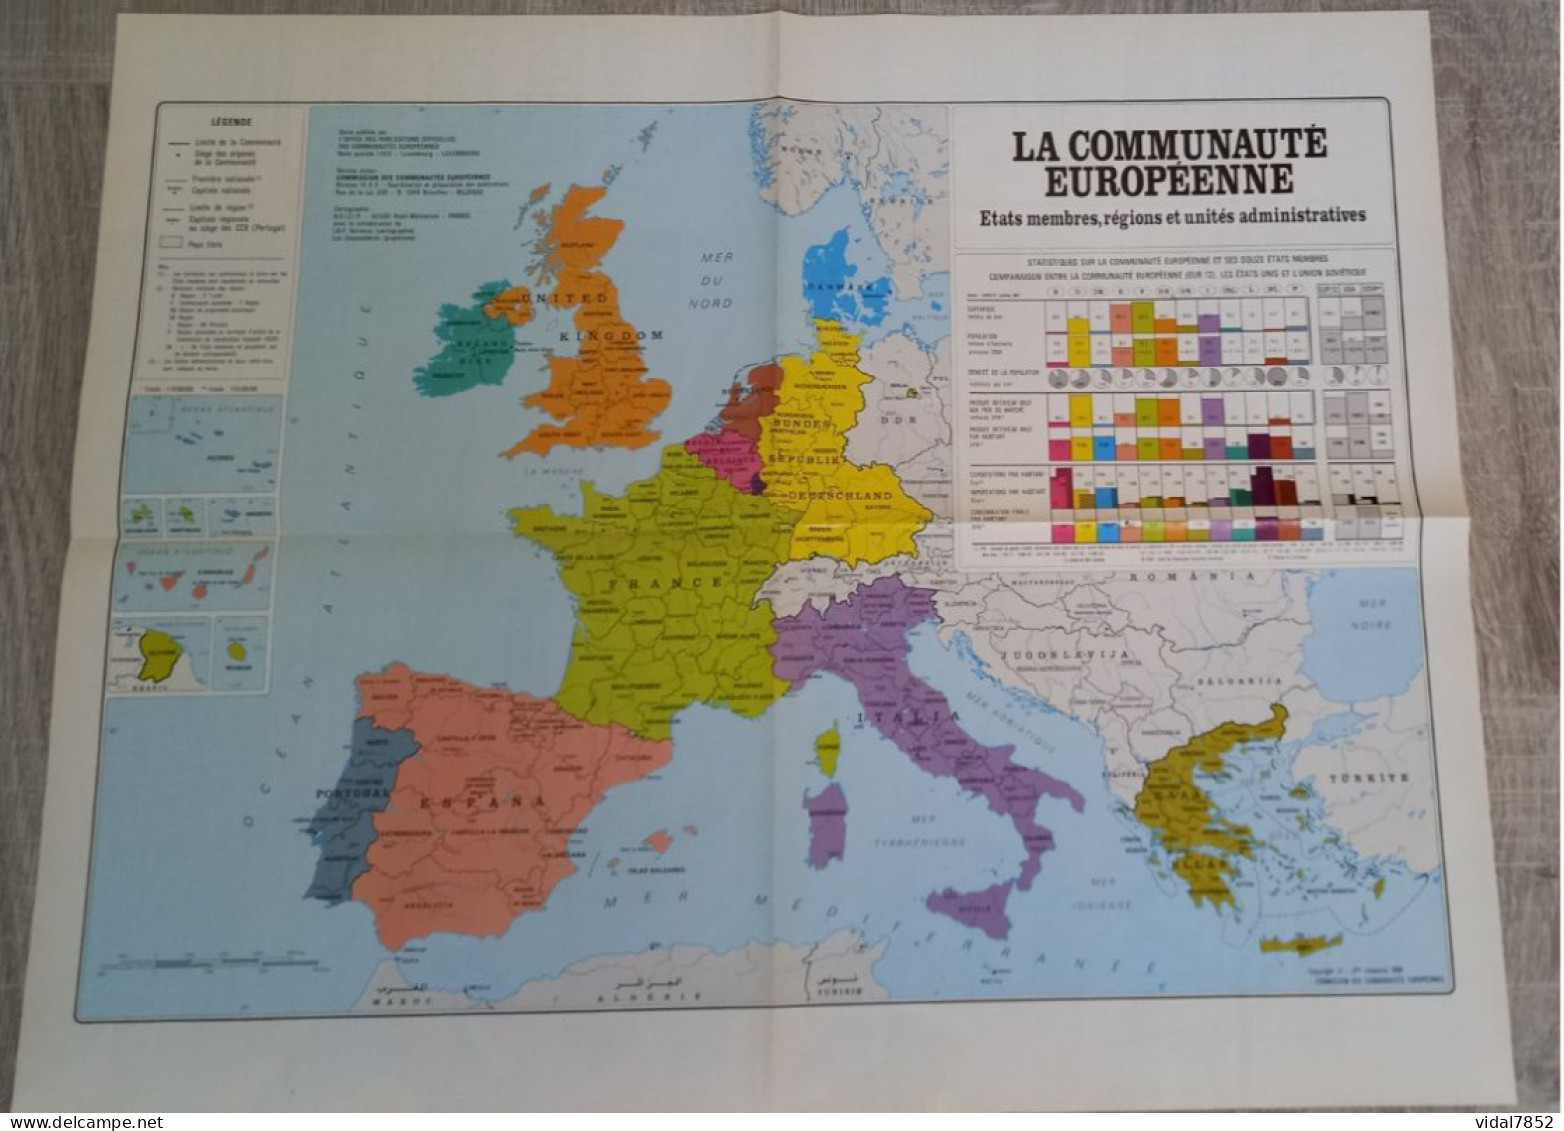 Calendrier-Almanach Des P.T.T 1990-Poster Intérieur Communauté Europèenne-Parc Axtérix Département AIN-01-Référence 421 - Groot Formaat: 1981-90